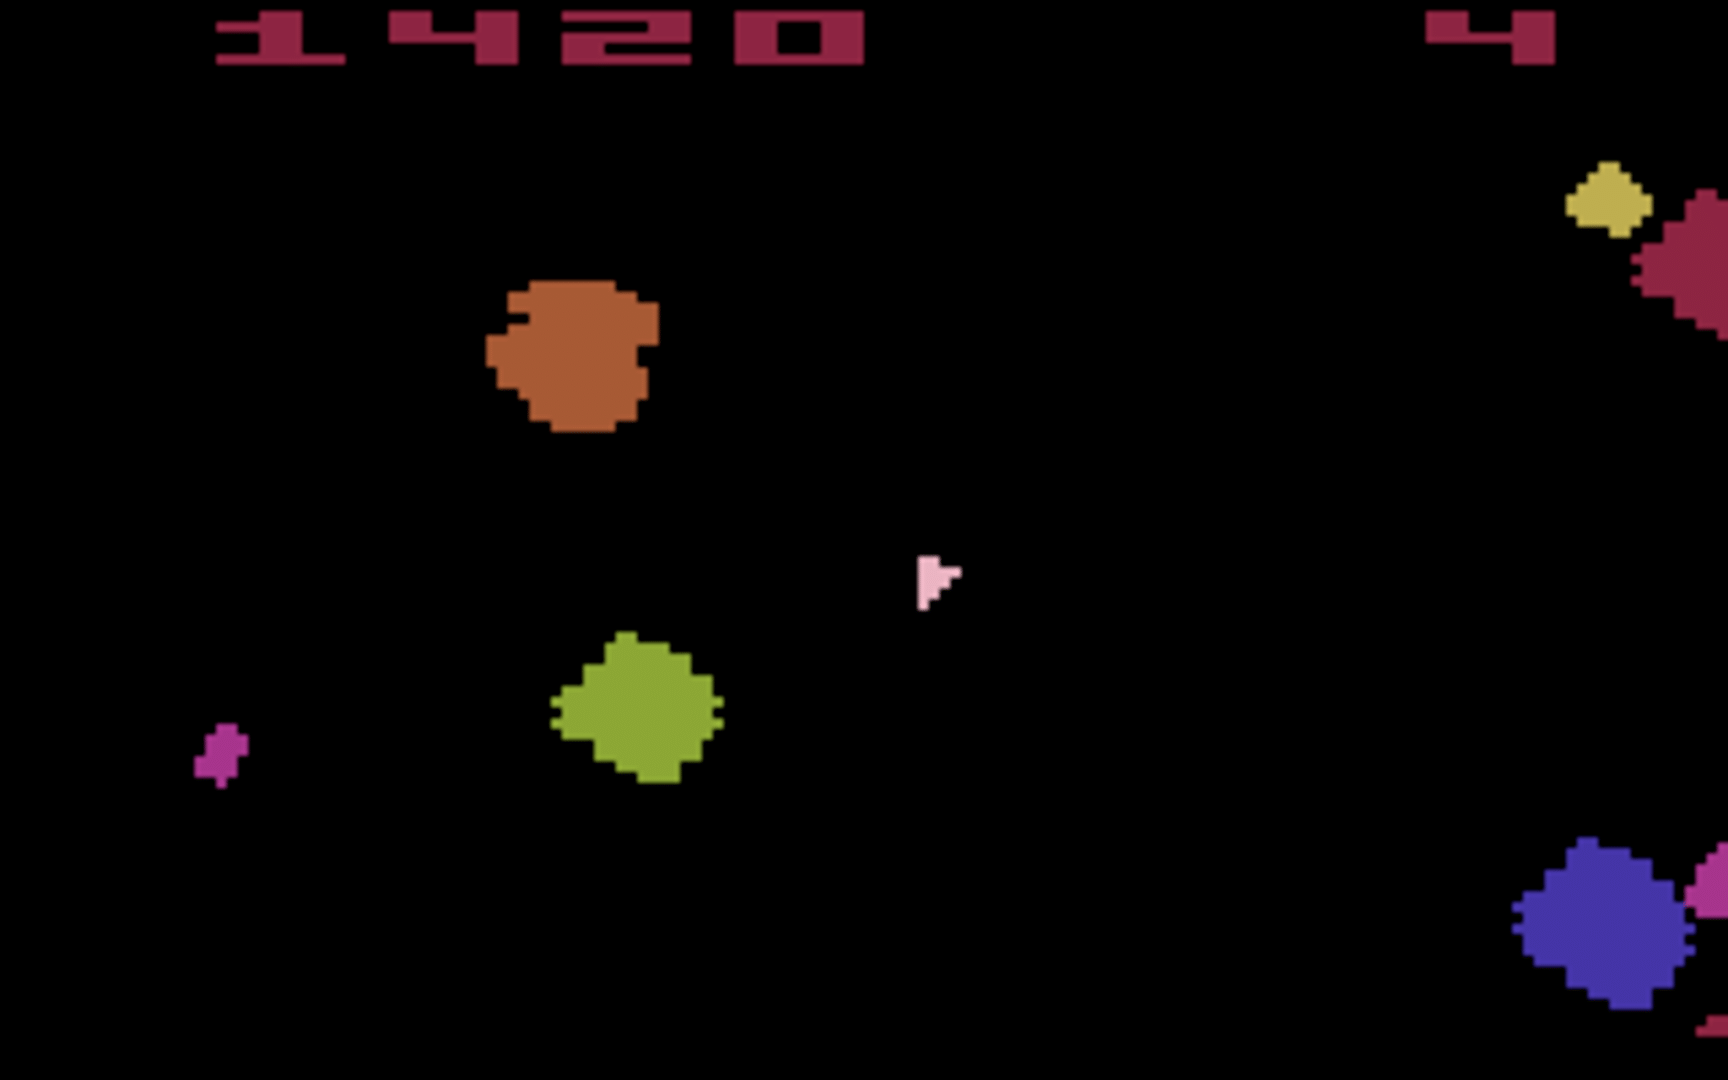 Asteroids screenshot